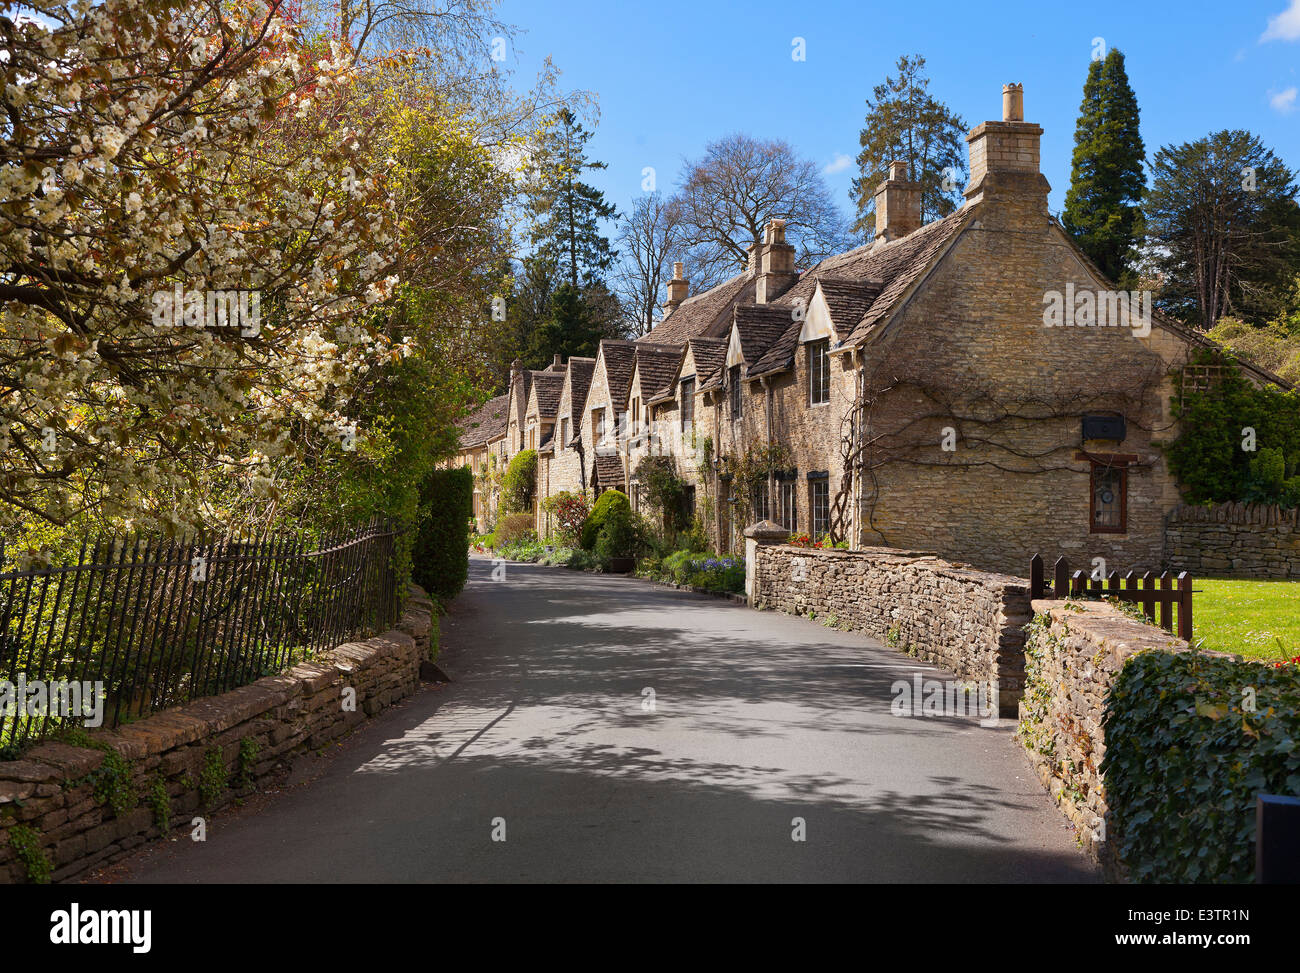 Castle Combe, Wiltshire, général de street view cottages en pierre de Cotswold, plein soleil Banque D'Images